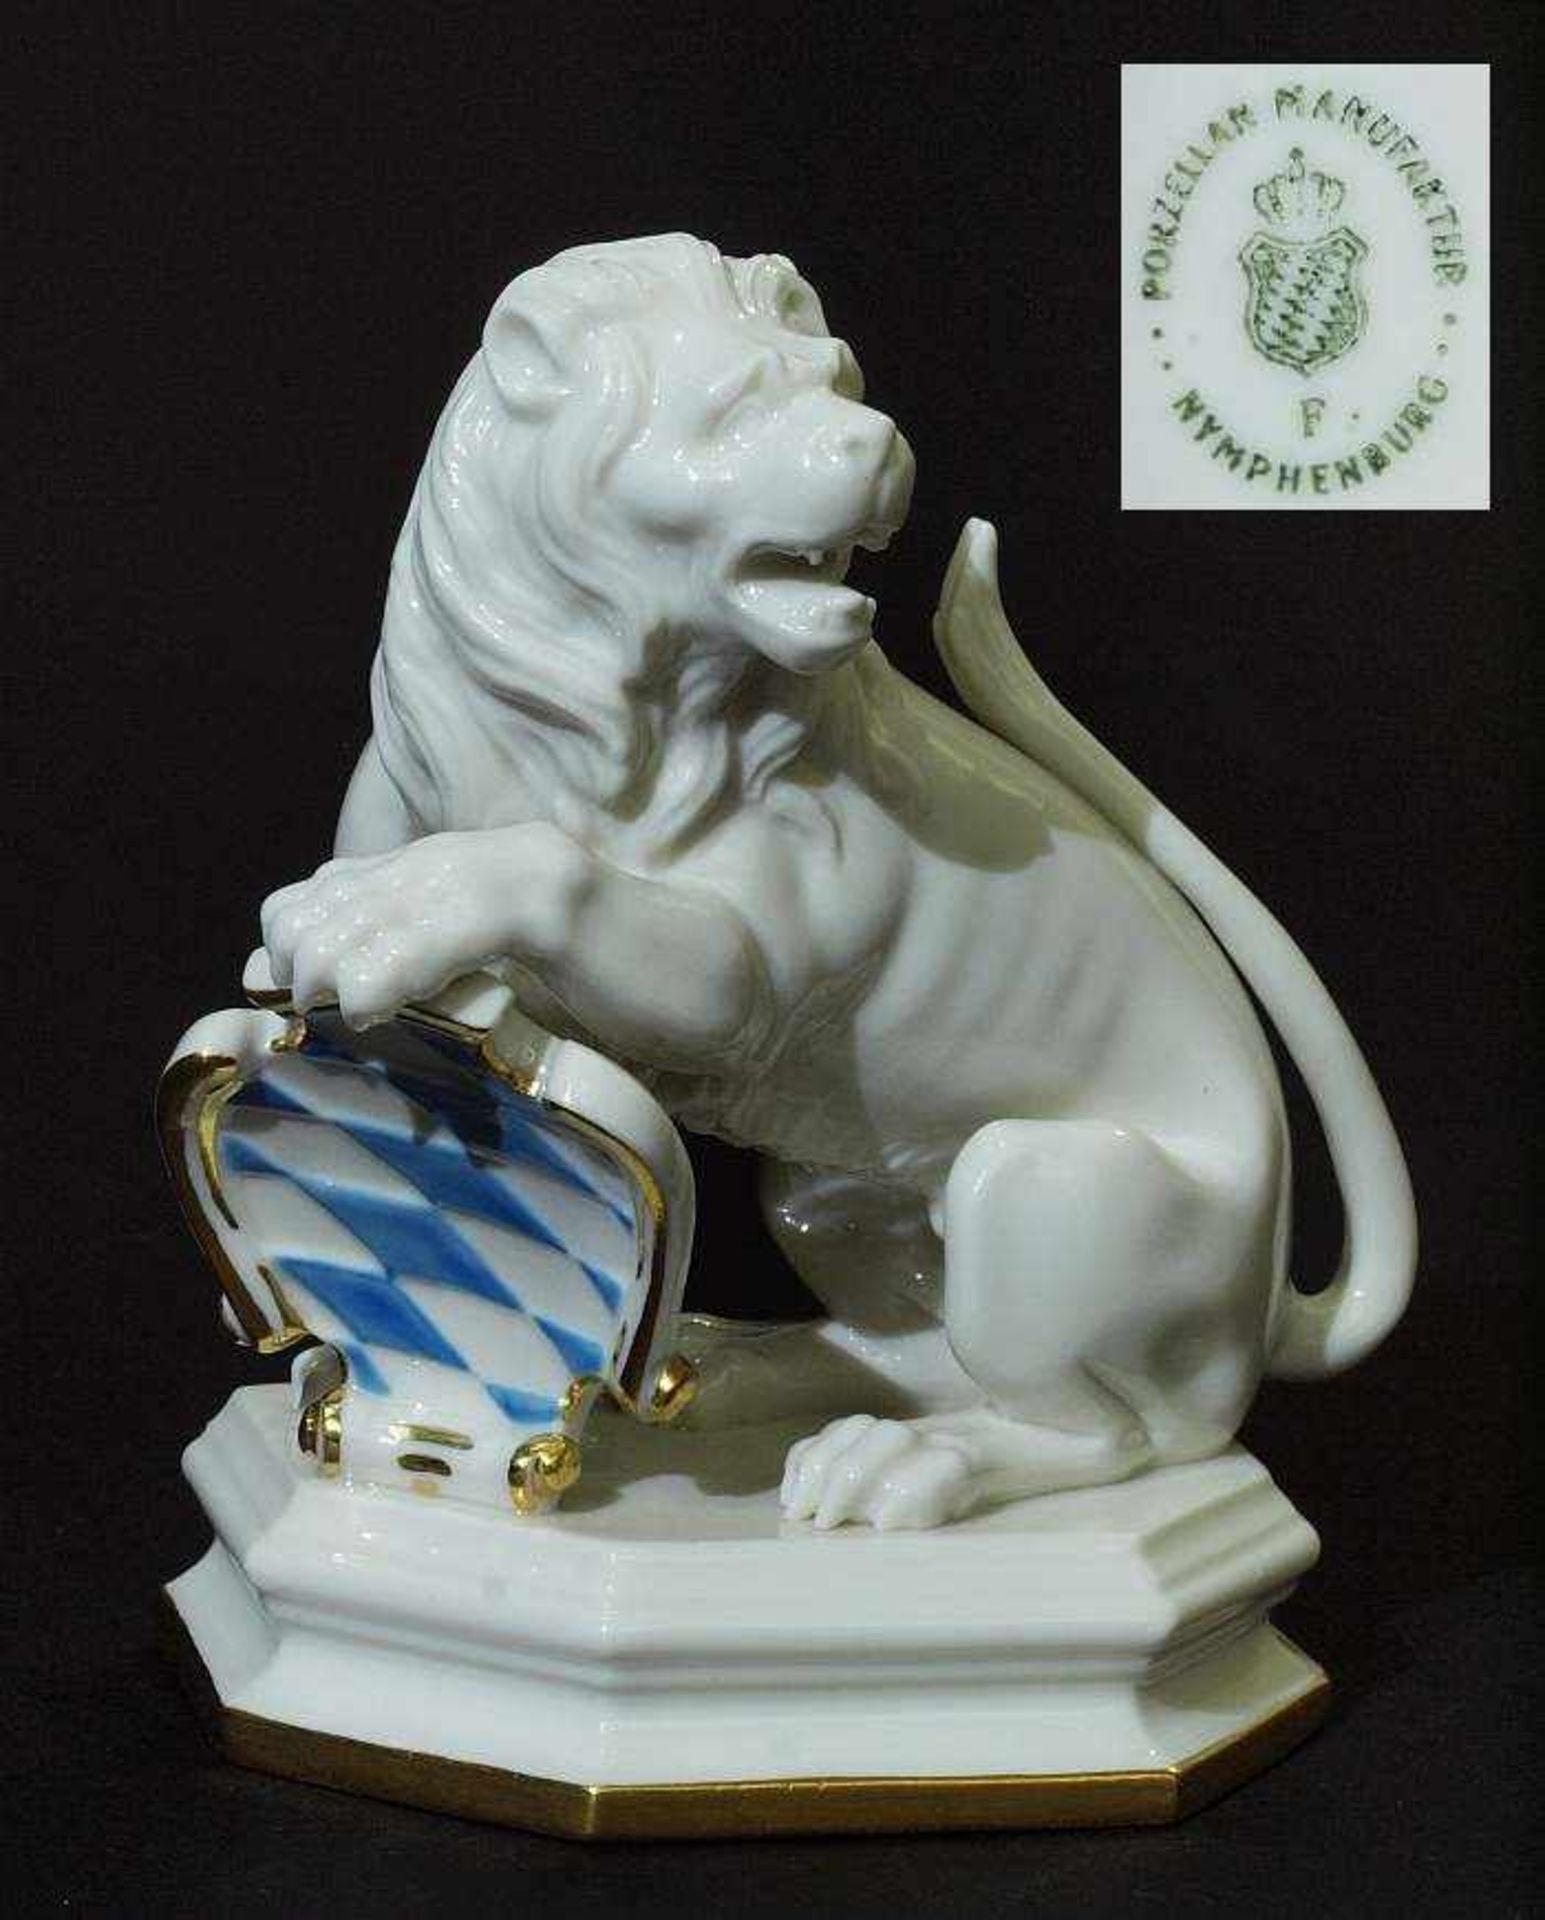 Löwe mit Wappen. Löwe mit Wappen. NYMPHEBURG, 20. Jahrhundert. Modell Nr. 2101B. Modell um 1800